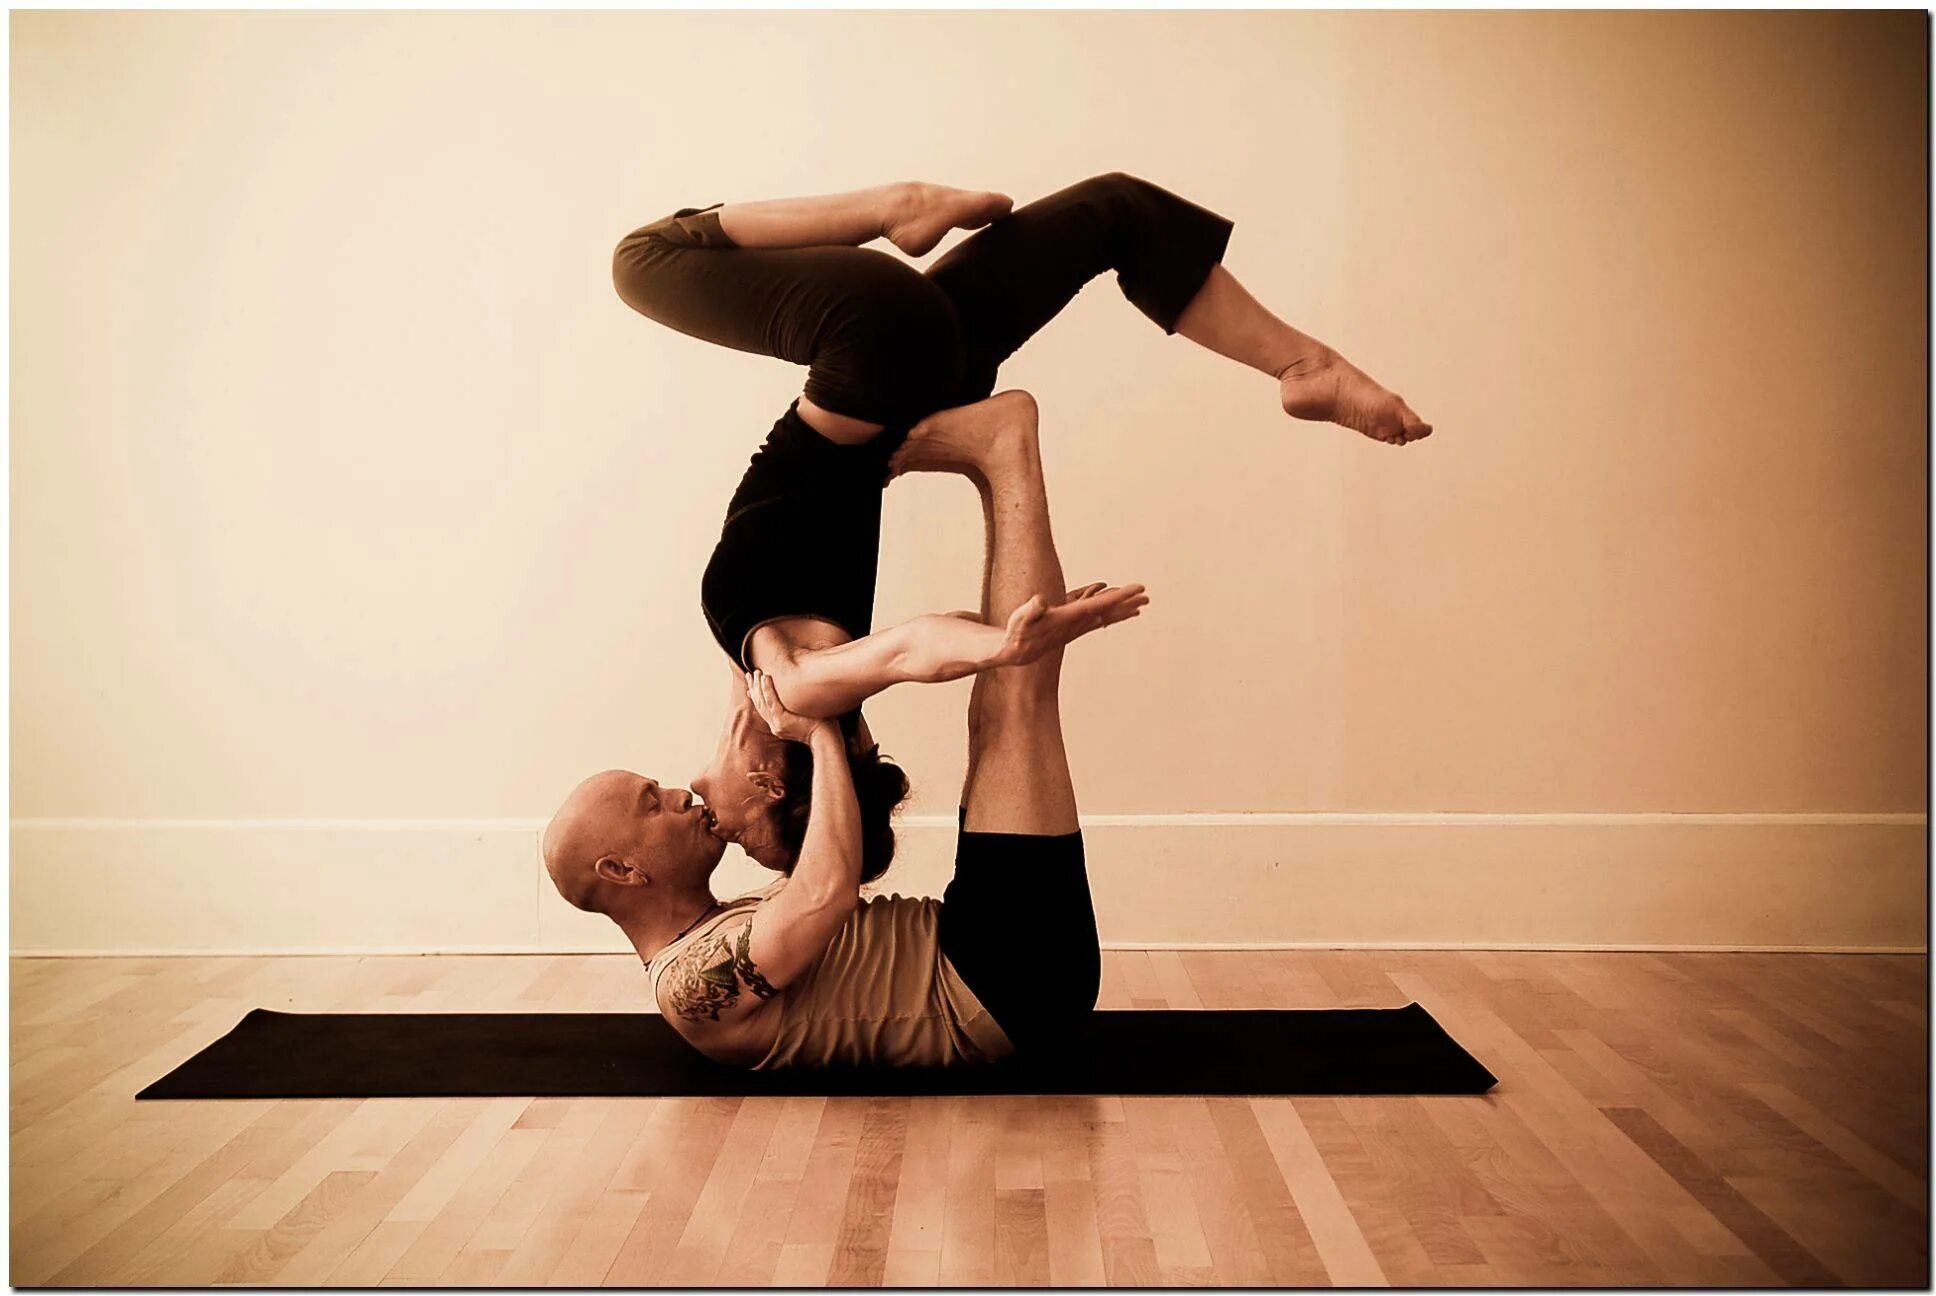 Йога для 2. Ёга для начинающих для двоих. АКРО йога для начинающих. Парная акройога для начинающих. Ёга для 2 для начинающих для детей.